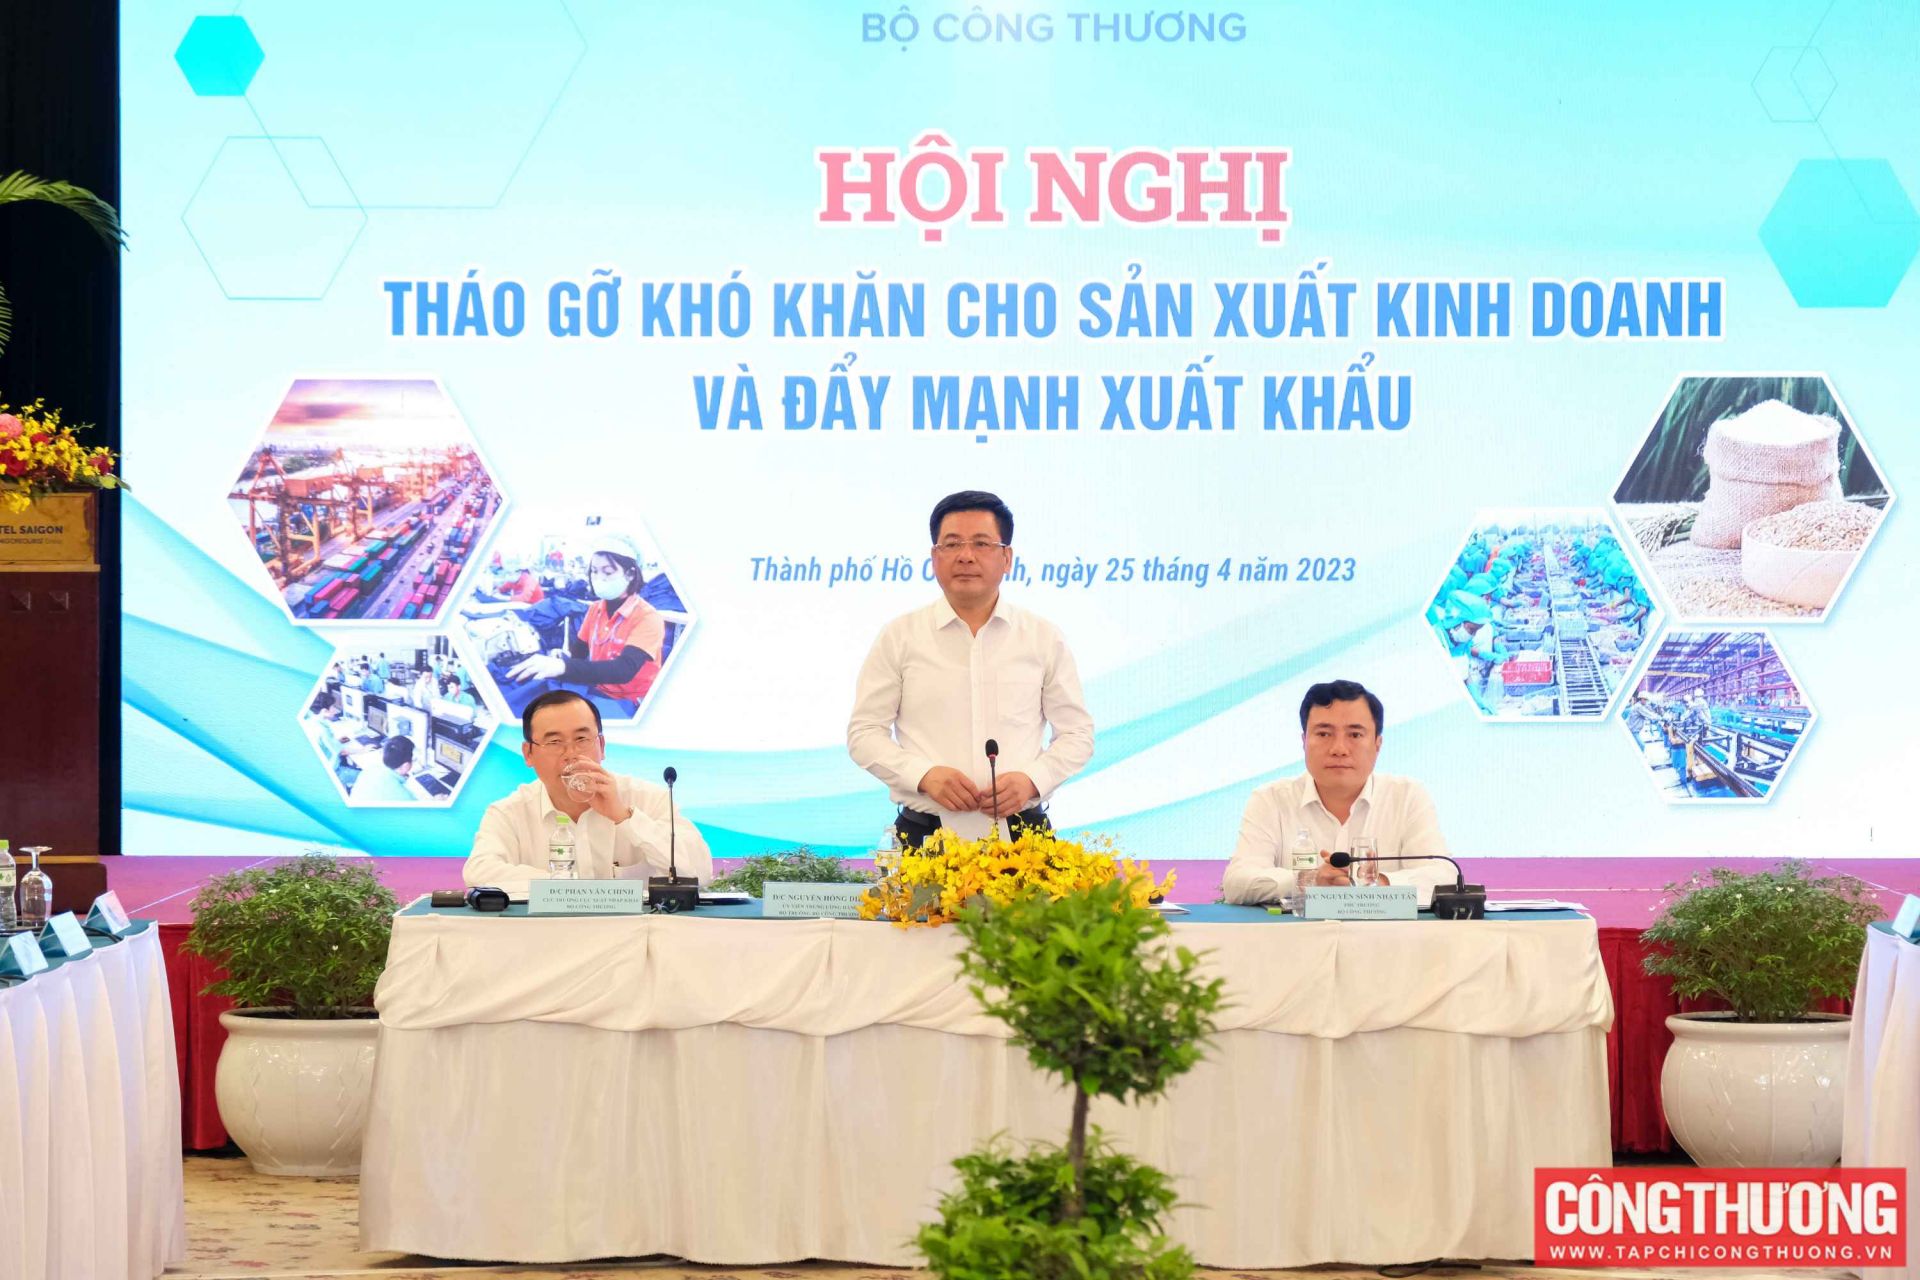 Bộ trưởng Bộ Công Thương Nguyễn Hồng Diên sẽ chủ trì Hội nghị “Tháo gỡ khó khăn trong sản xuất kinh doanh và đẩy mạnh xuất khẩu” tại TP. Hồ Chí Minh